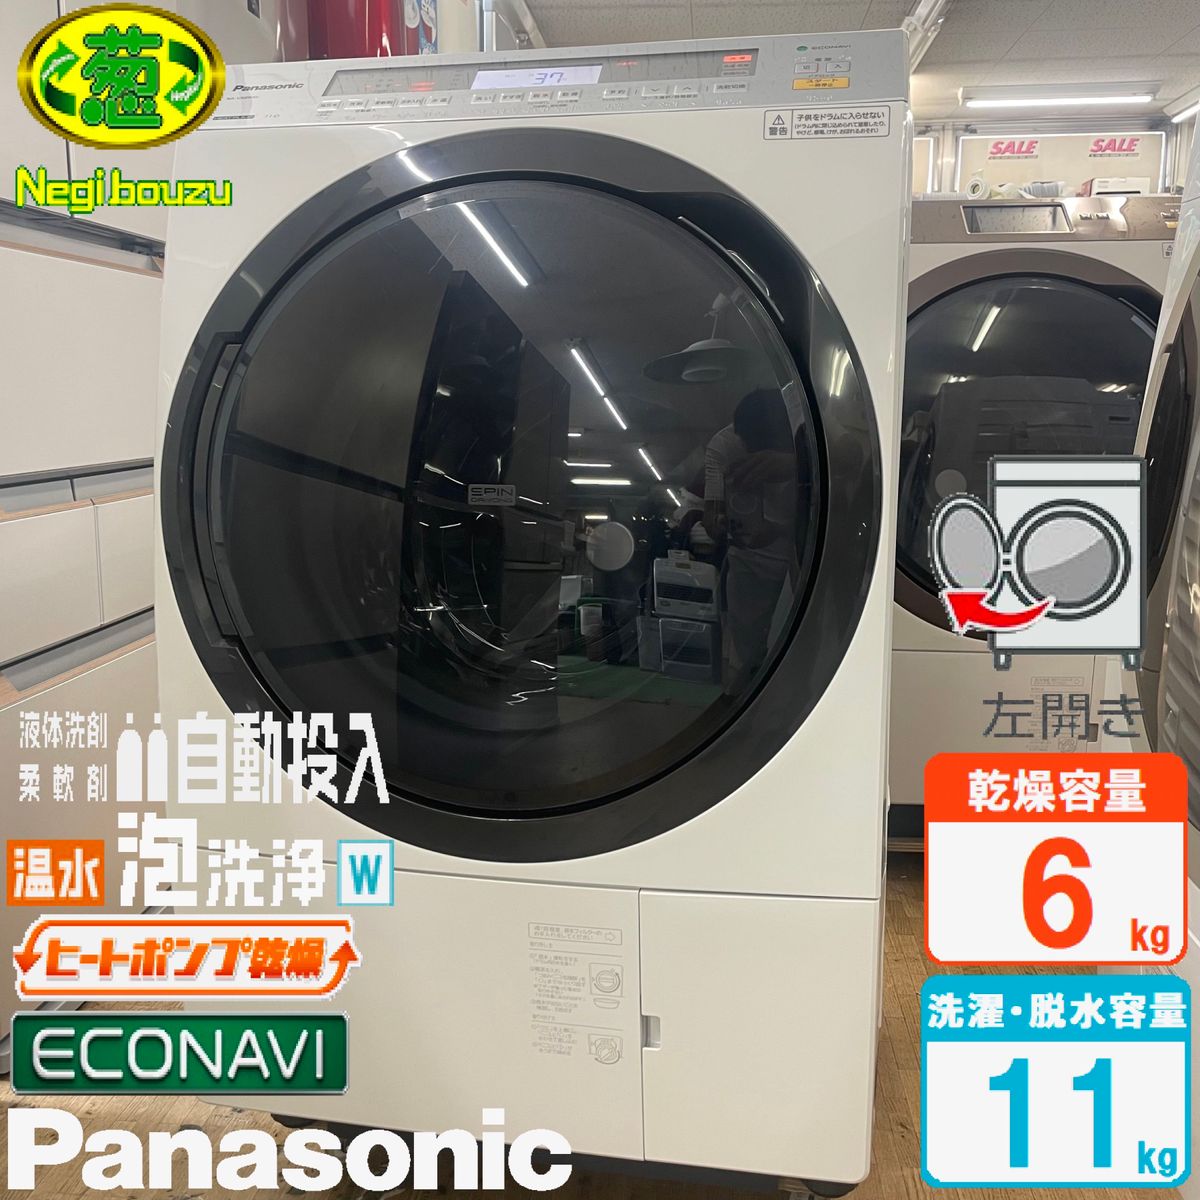 美品【 Panasonic 】パナソニック ドラム式洗濯機 自動投入液体洗剤・柔軟剤 温水泡洗浄W NA-VX8900L